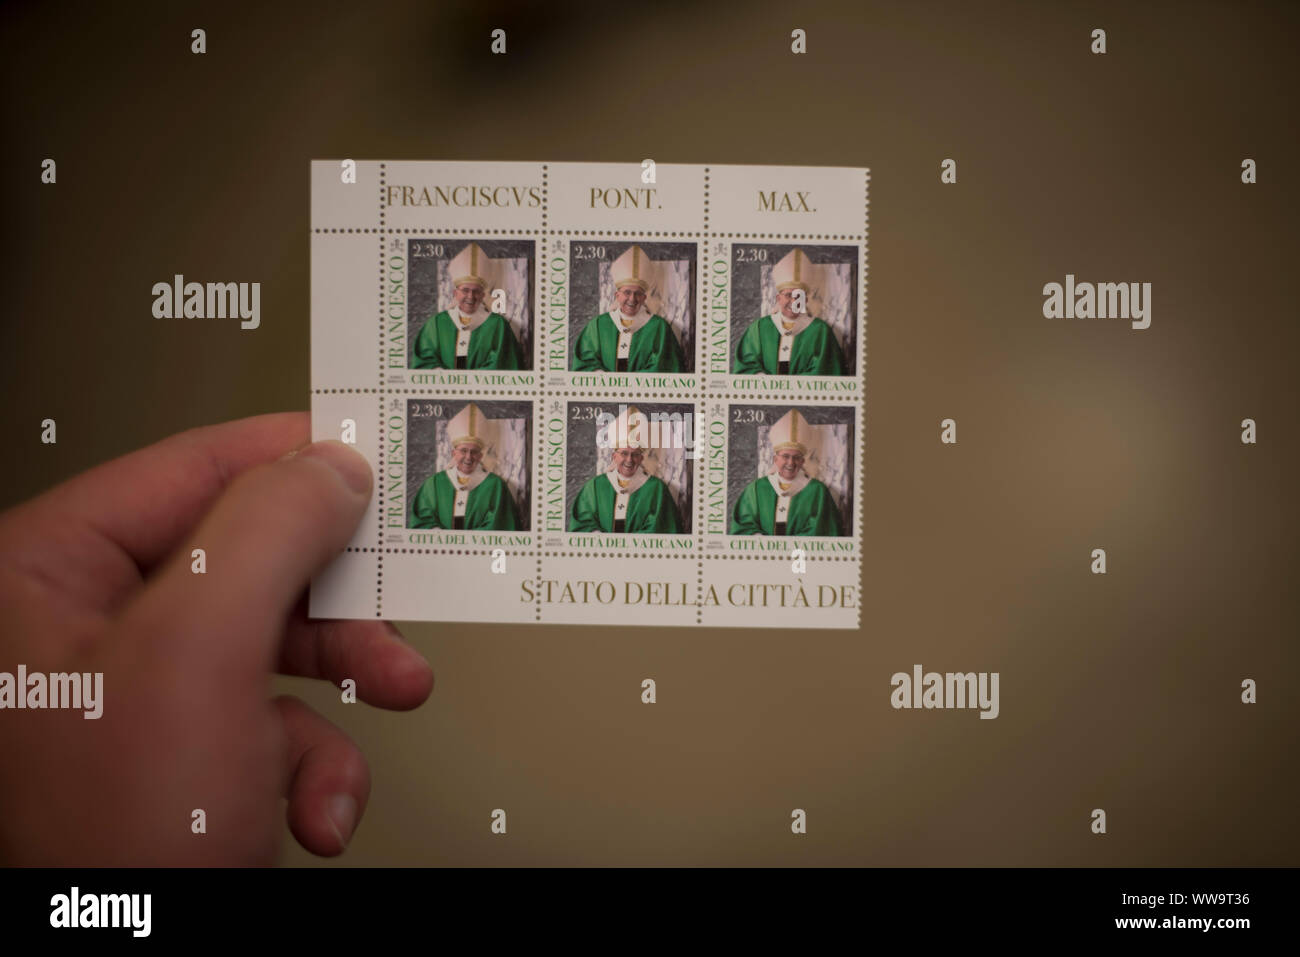 Rome, Italie - 6 juillet 2018 : Une main est titulaire de six timbres avec des photos du Pape François sur eux. Banque D'Images